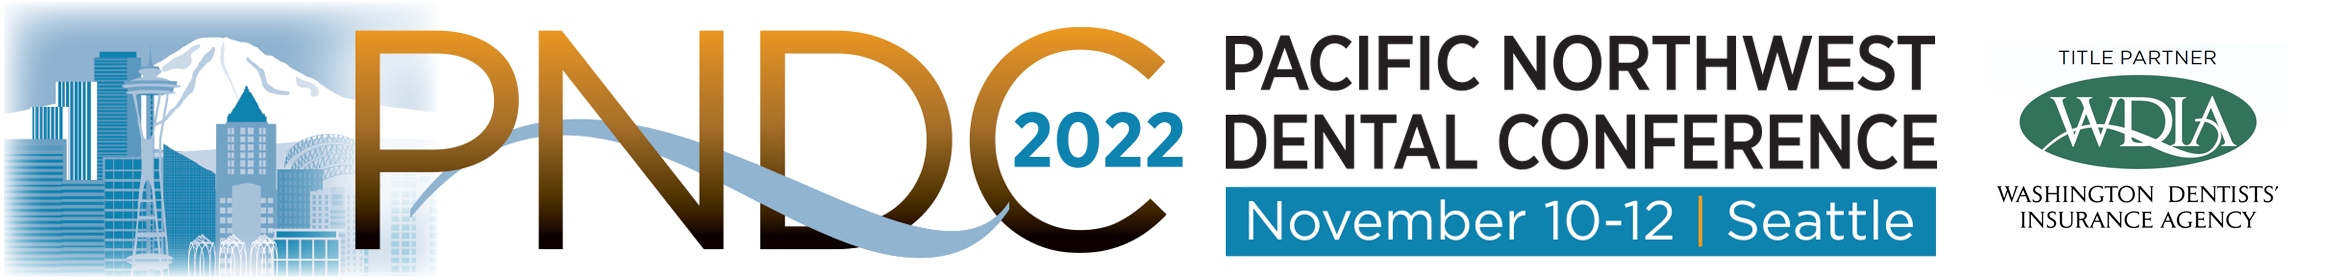 PNDC 2022 November 10-12 Seattle Website Banner 